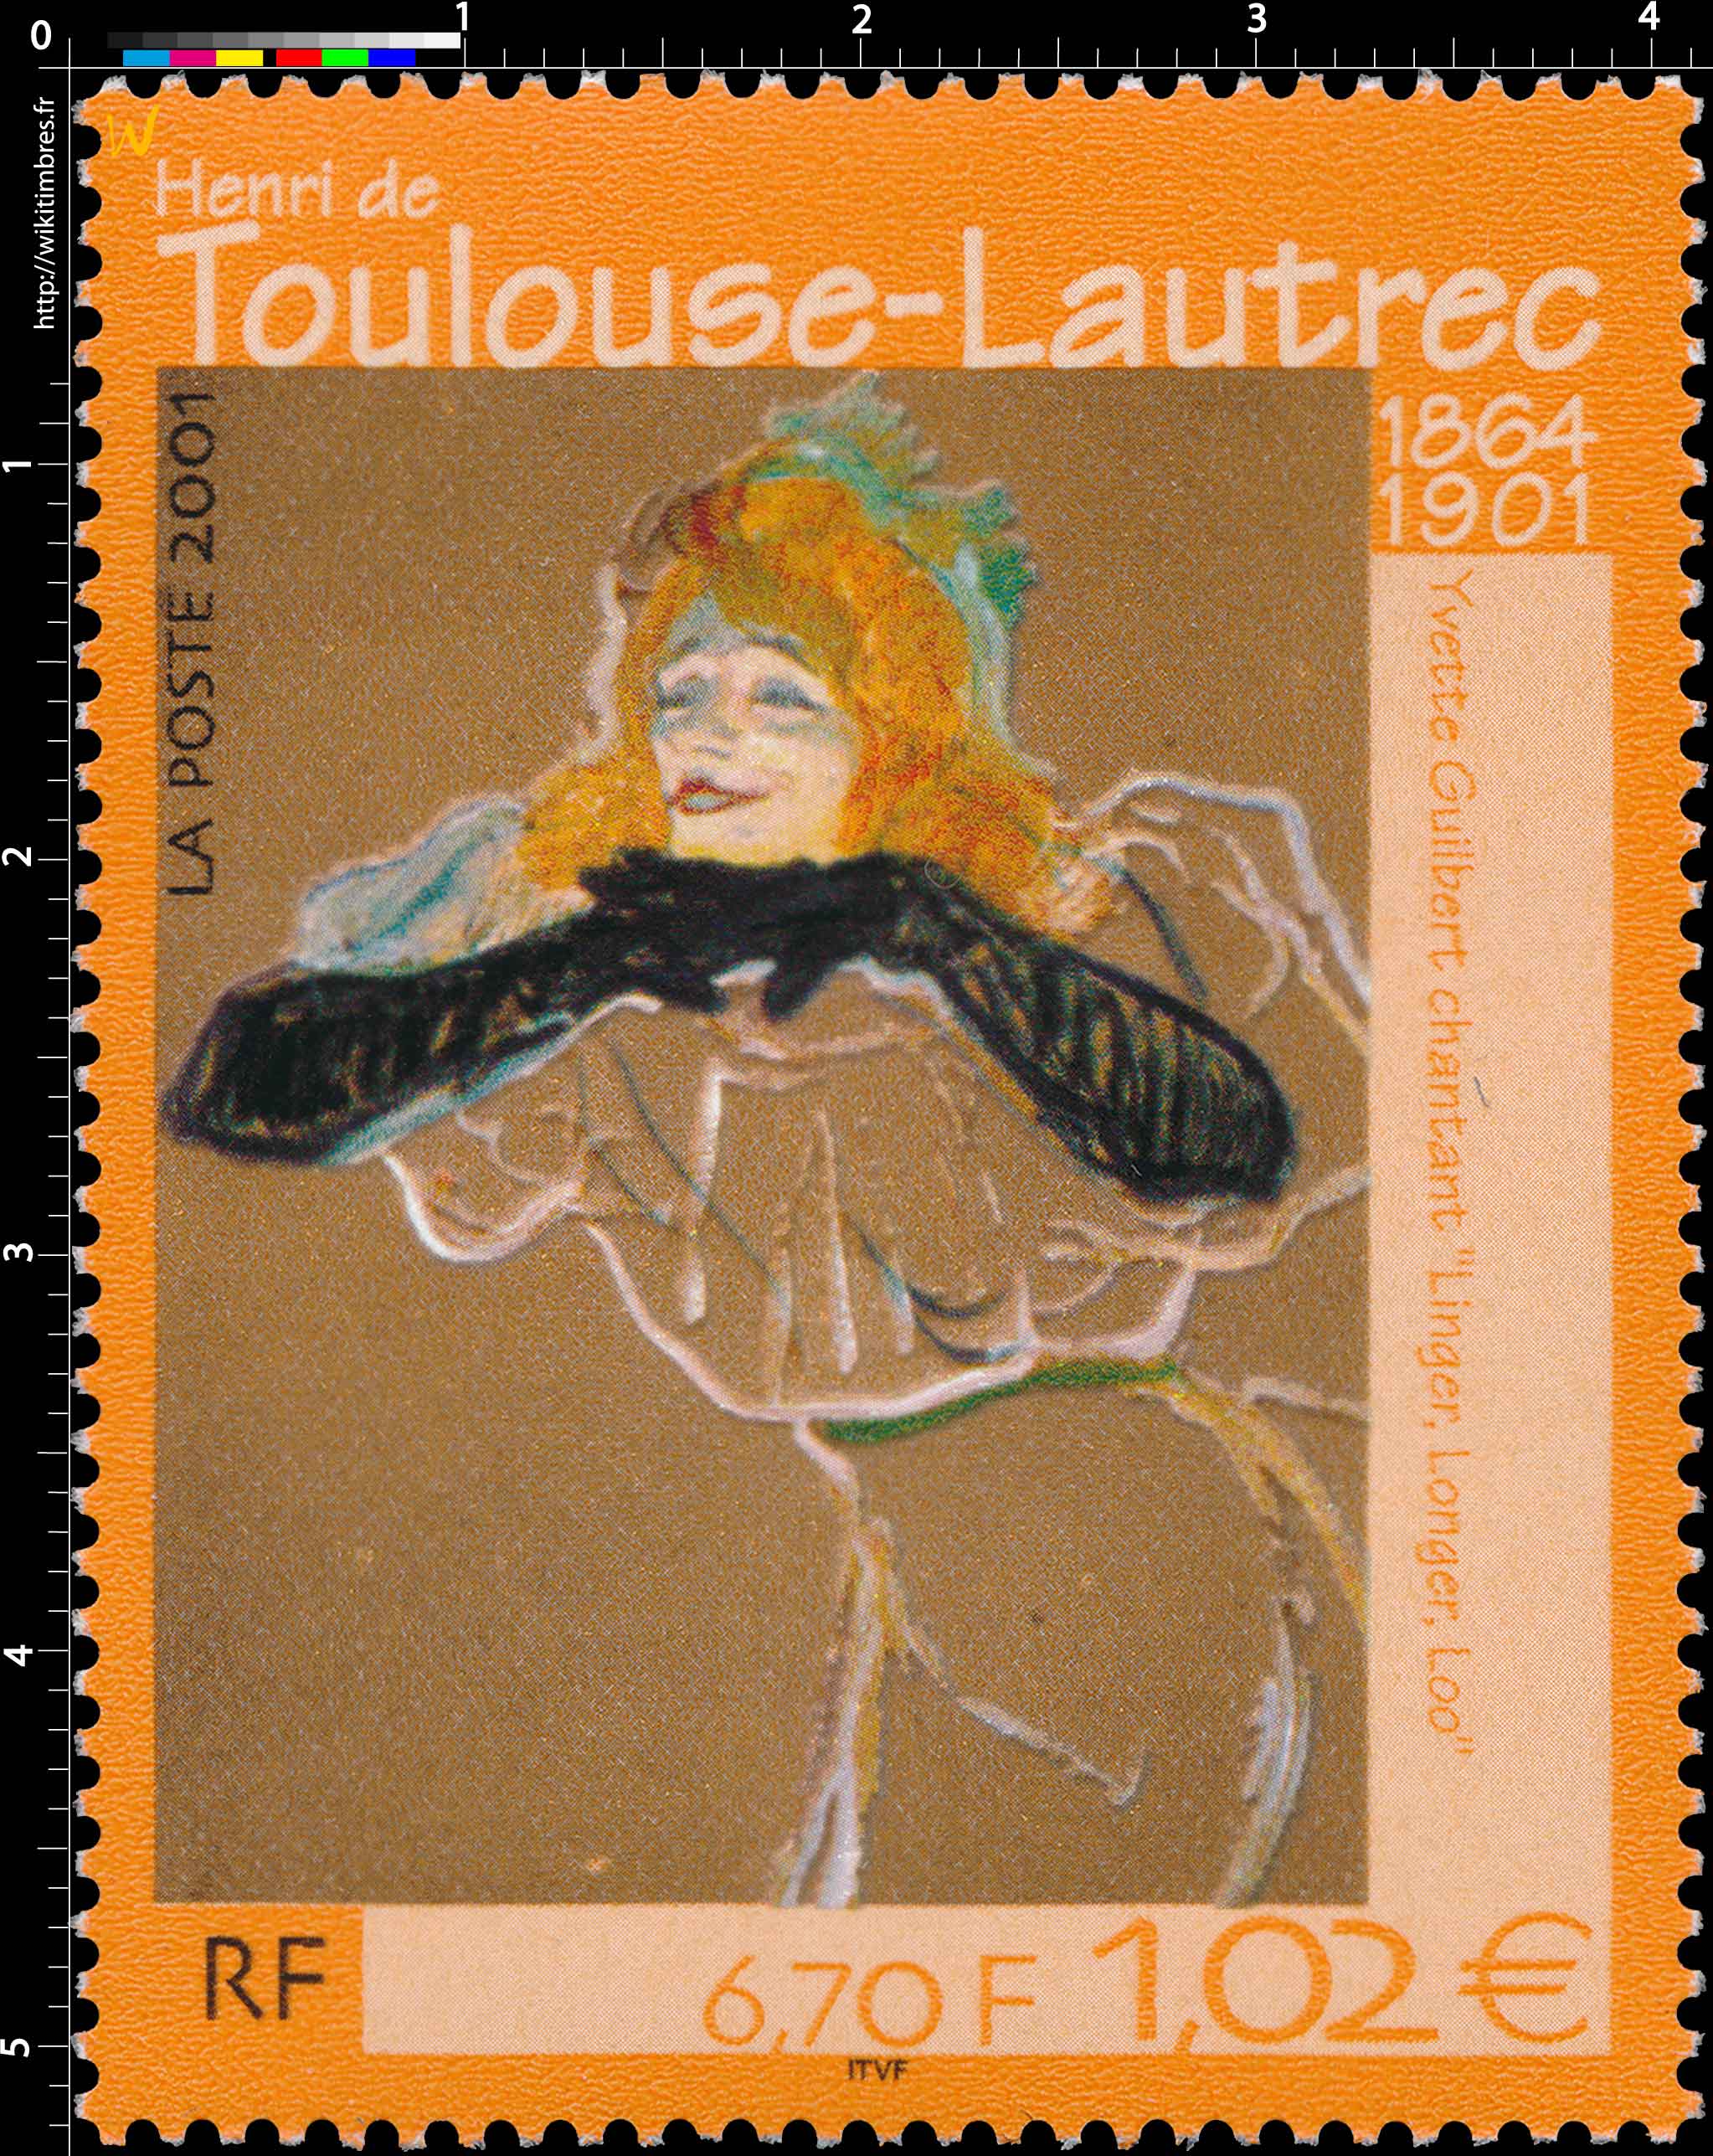 2001 Henri de Toulouse-Lautrec 1864-1901 Yvette Guilbert chantant Linger, Longer, Loo